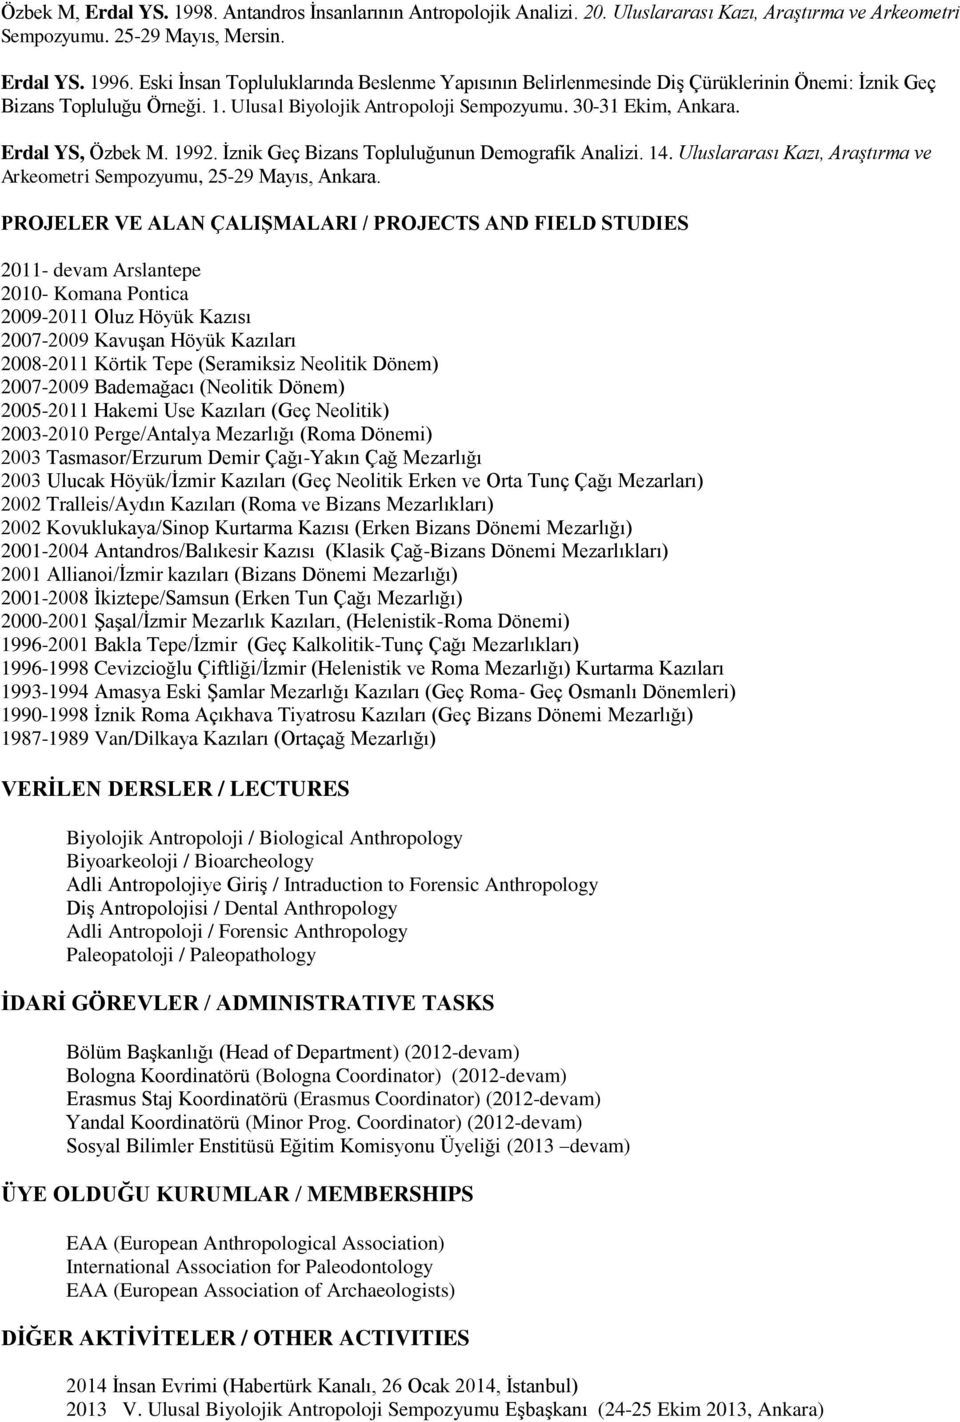 Erdal YS, Özbek M. 1992. İznik Geç Bizans Topluluğunun Demografik Analizi. 14. Uluslararası Kazı, Araştırma ve Arkeometri Sempozyumu, 25-29 Mayıs, Ankara.